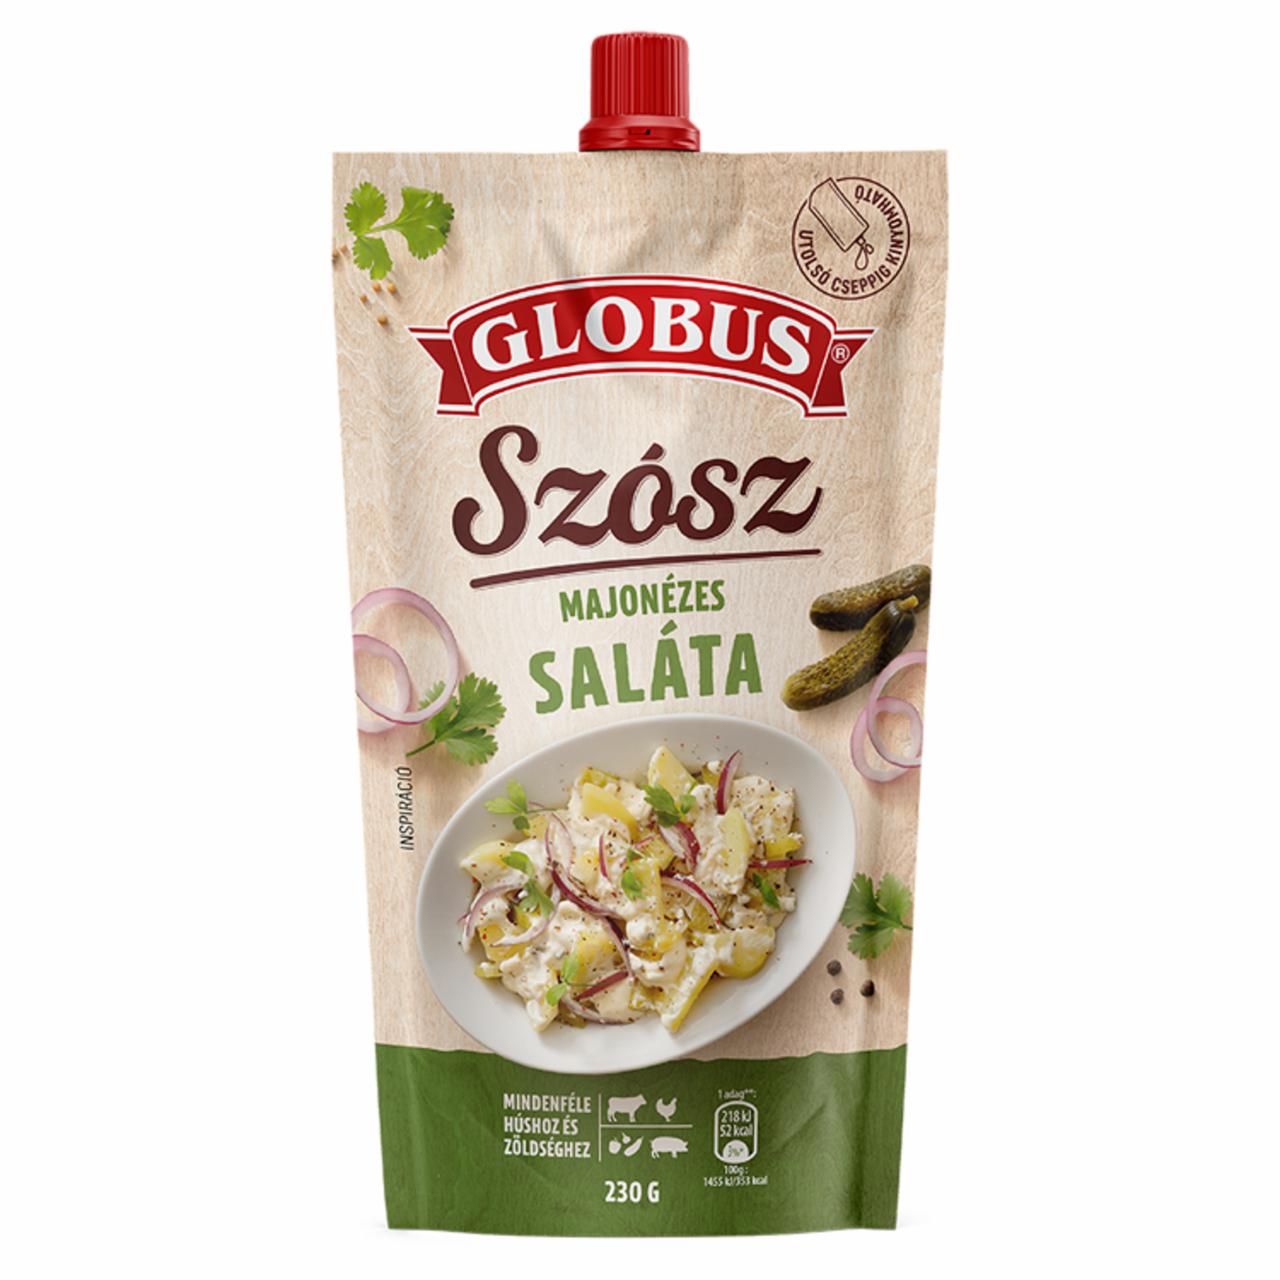 Képek - Globus majonézes saláta szósz 230 g